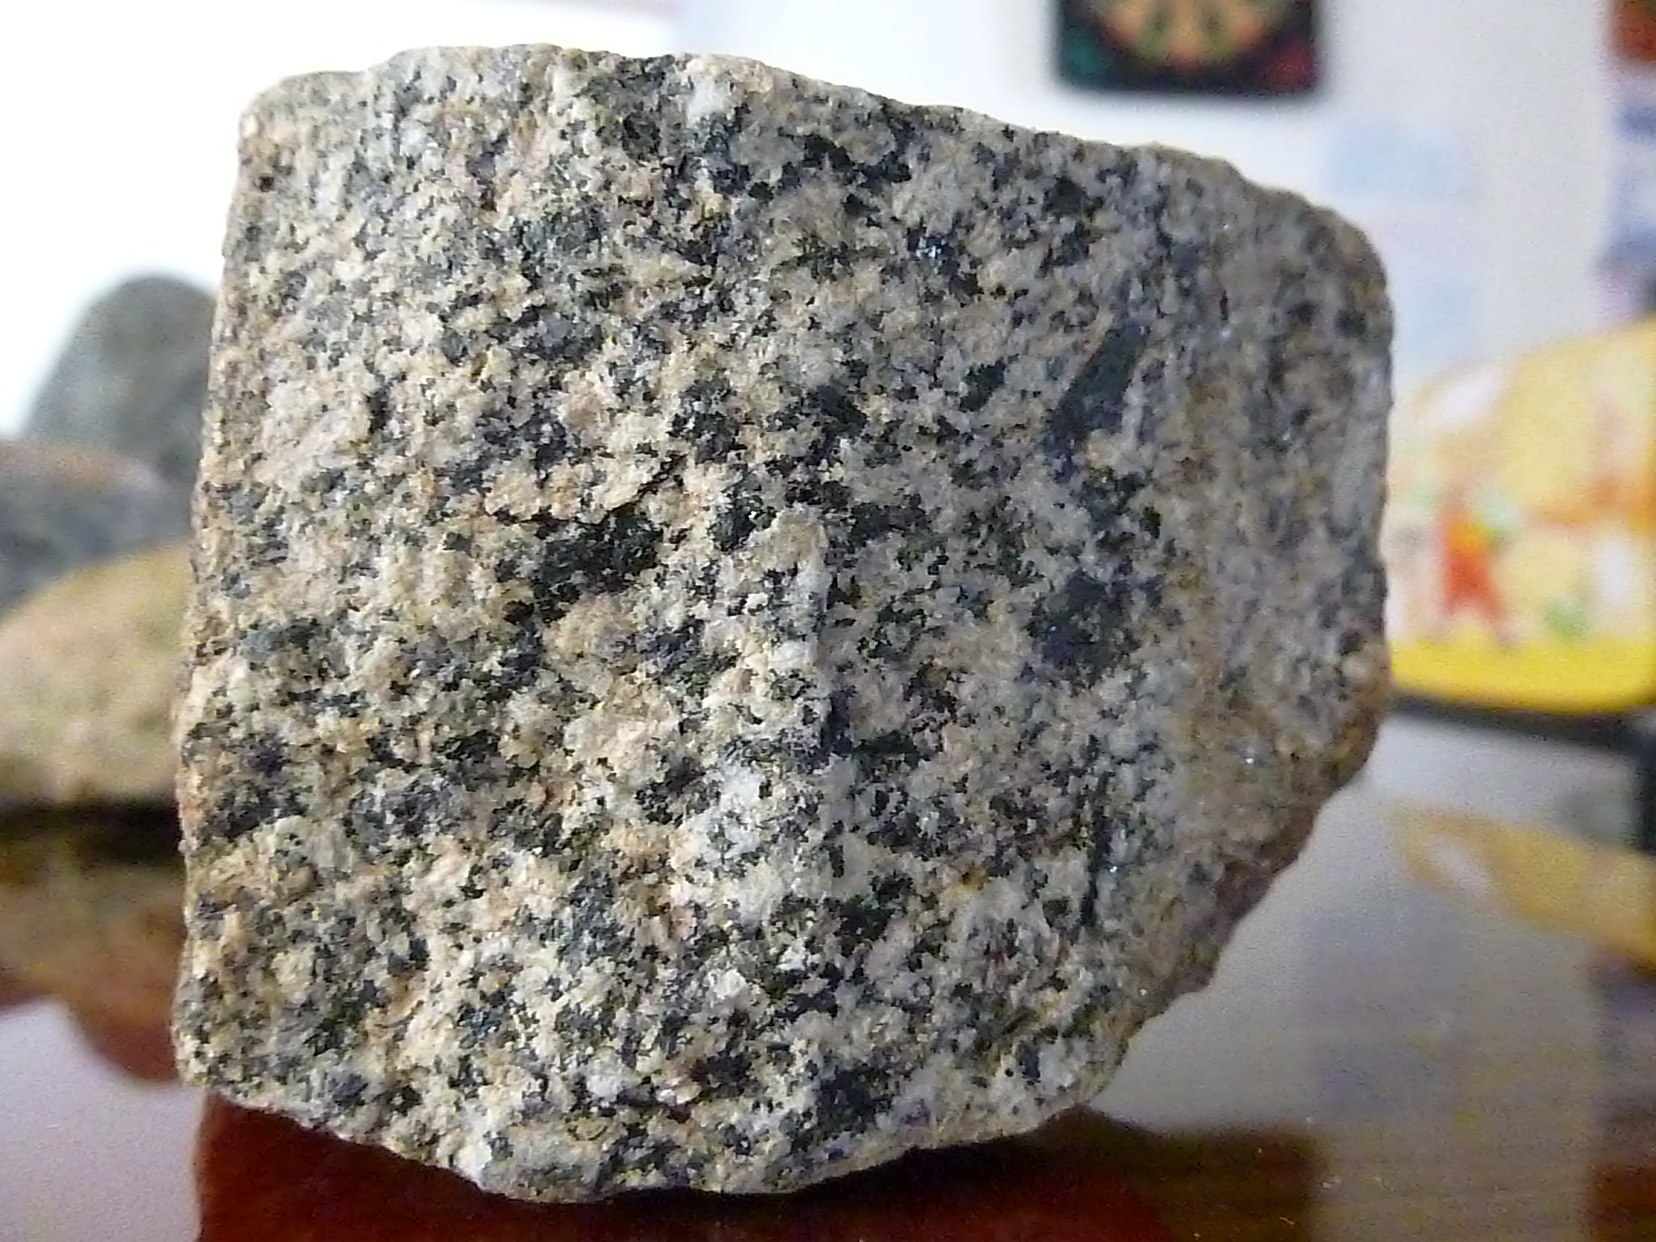 Roca de granito, mineral del que parte la mayor parte del gas radn al que estamos expuestos.